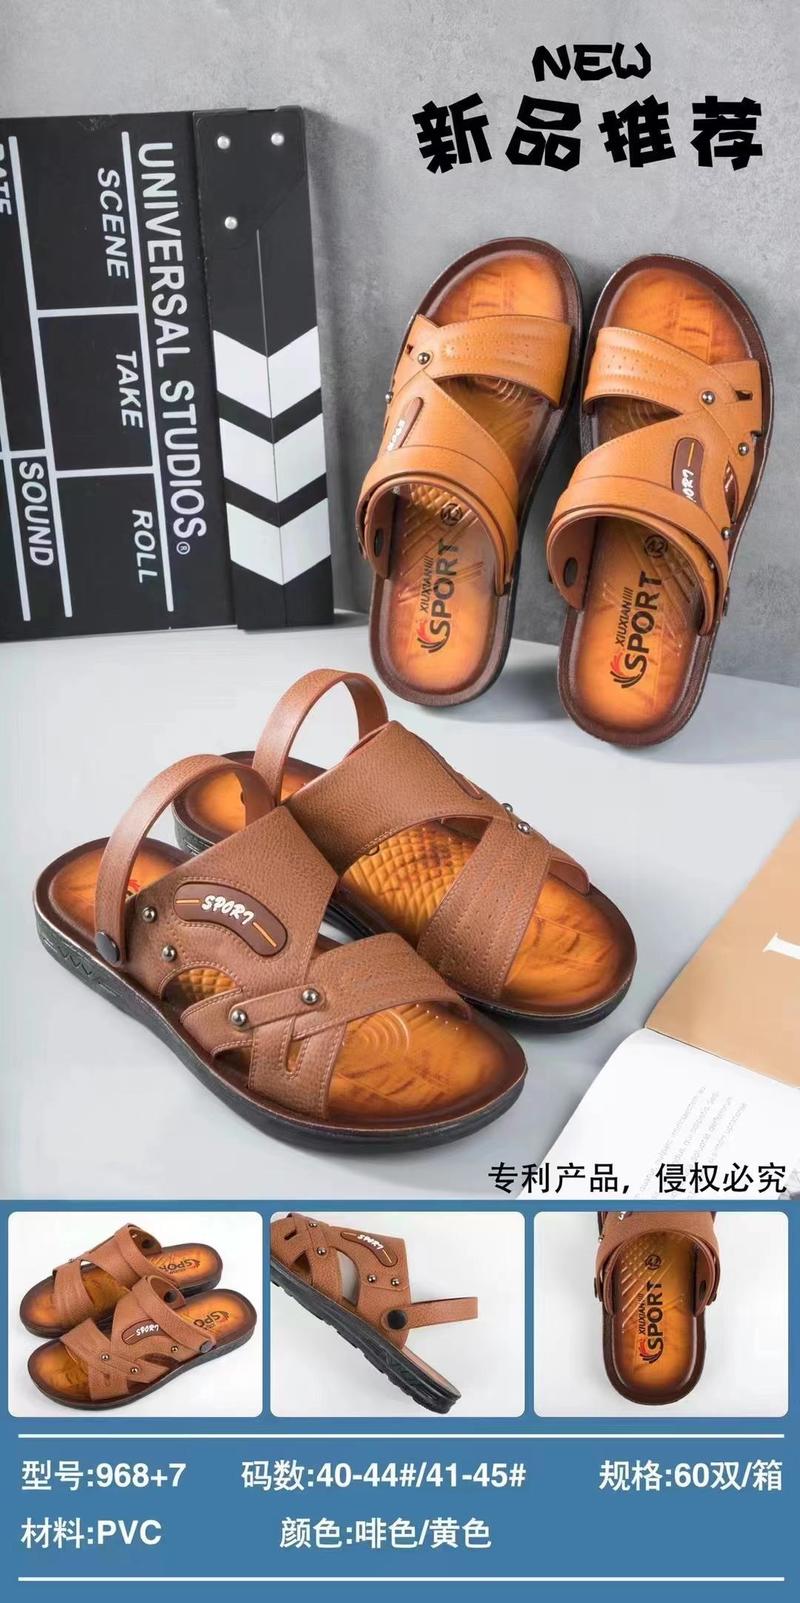 新款泰国乳胶凉鞋乳胶凉鞋凉鞋非常火爆产品